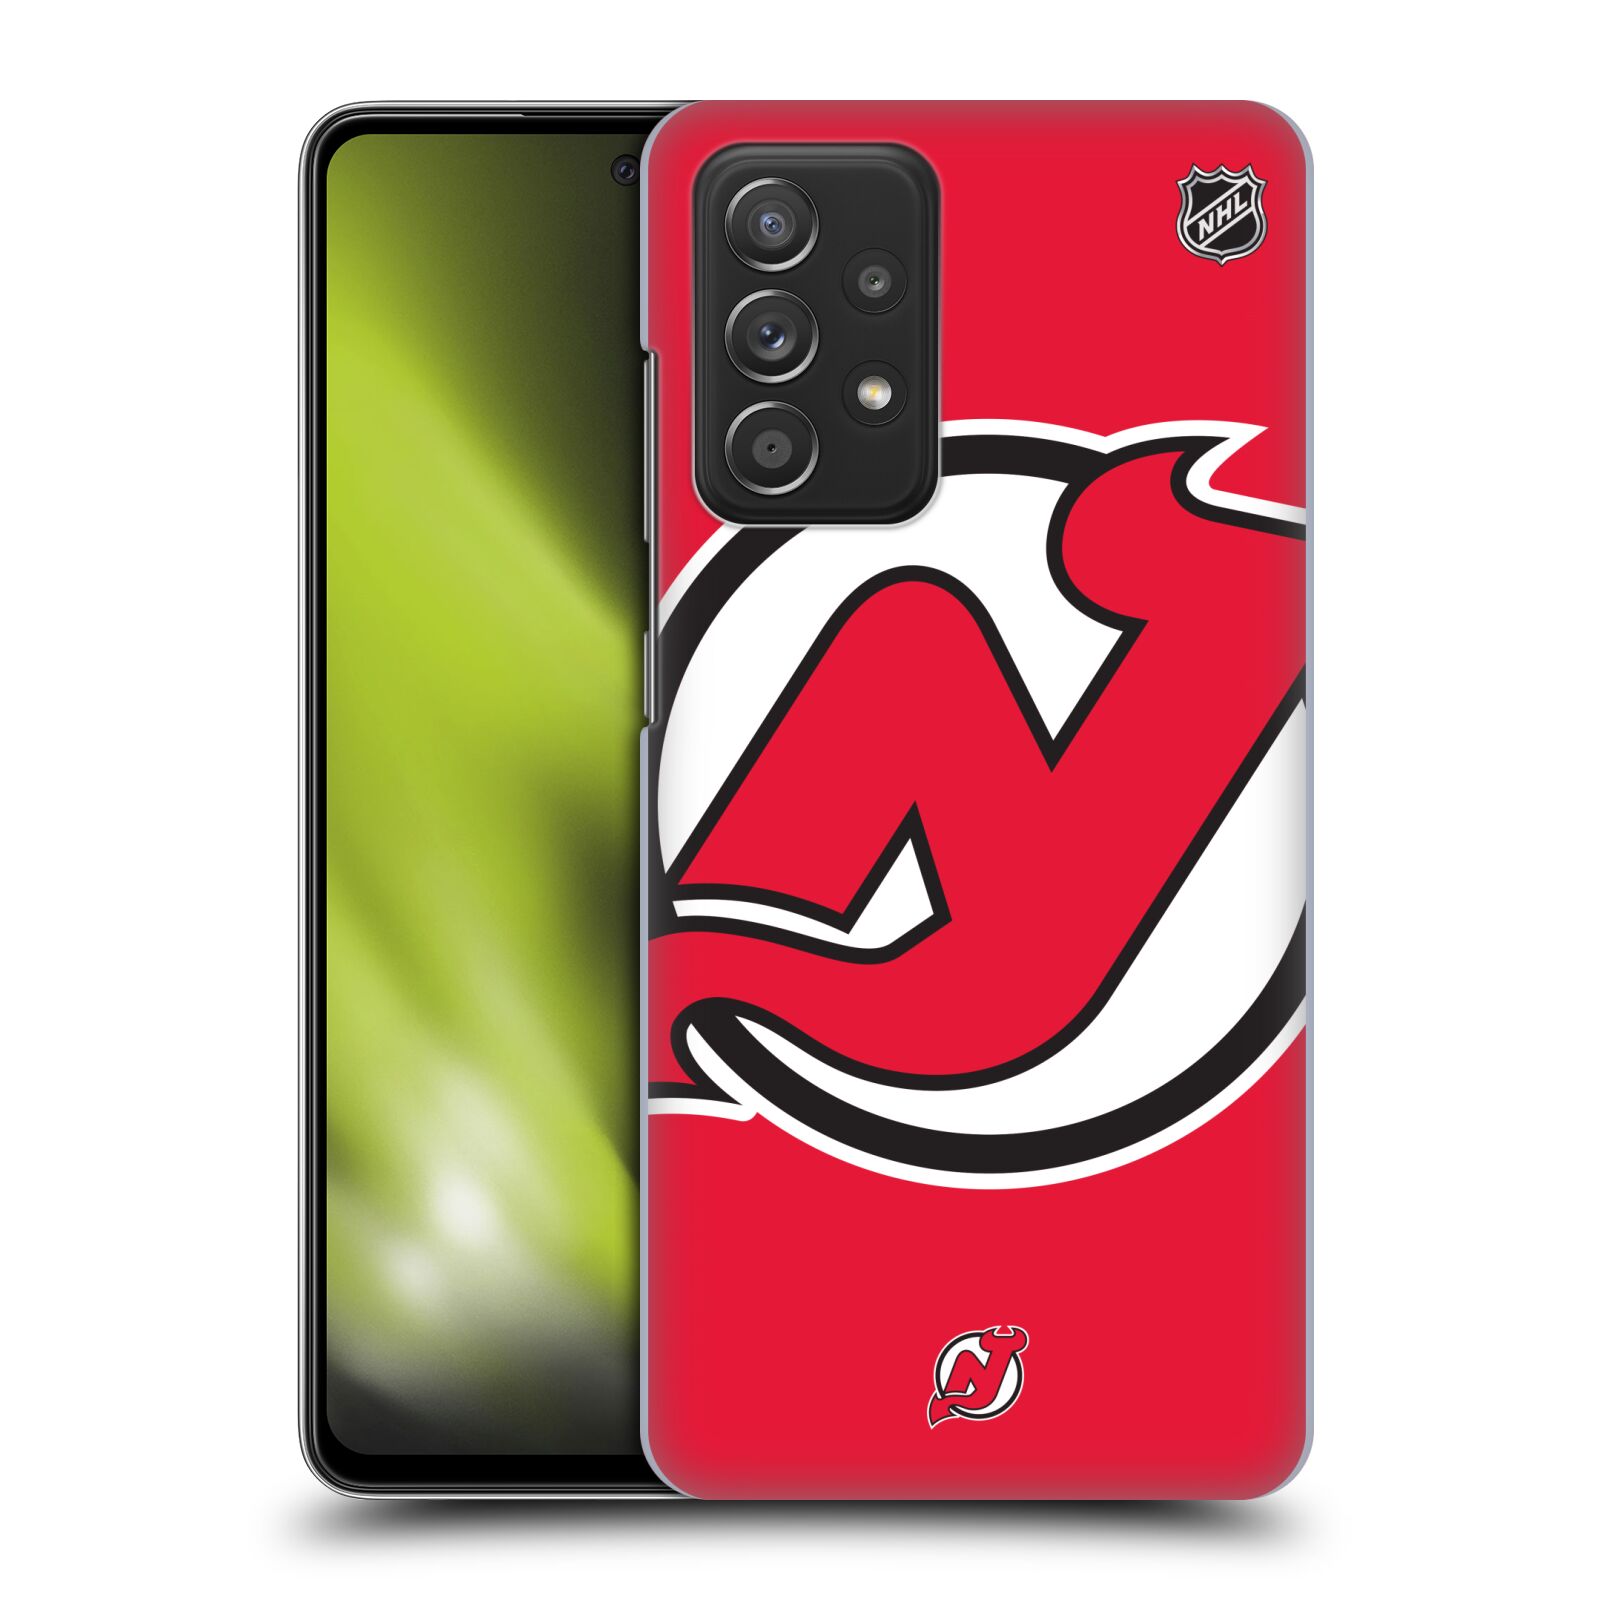 Pouzdro na mobil Samsung Galaxy A52 / A52 5G / A52s 5G - HEAD CASE - Hokej NHL - New Jersey Devils - Velký znak